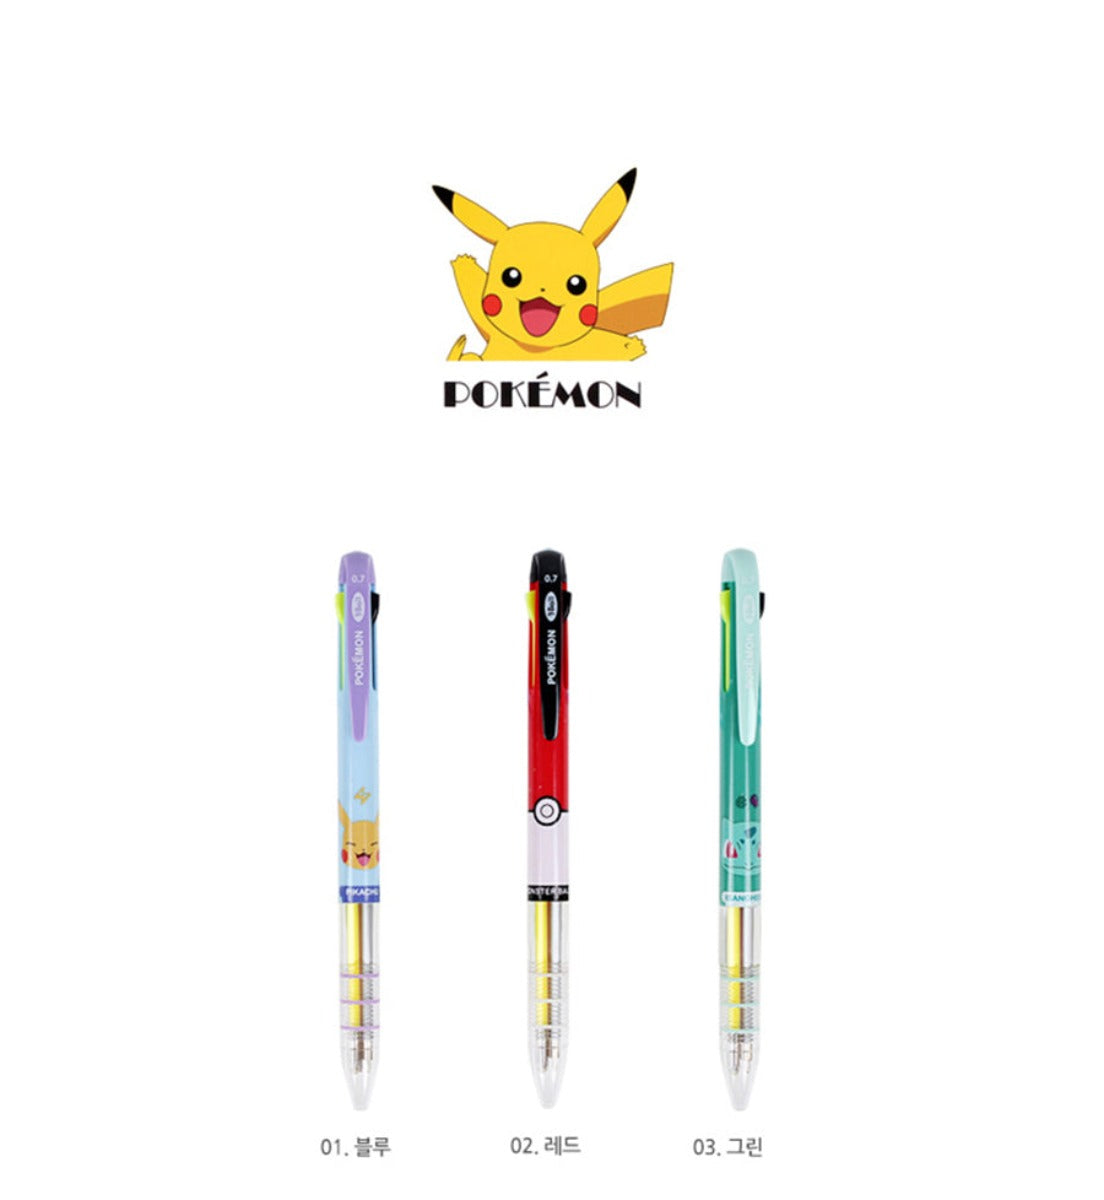 3 Colour Pen - Pokémon